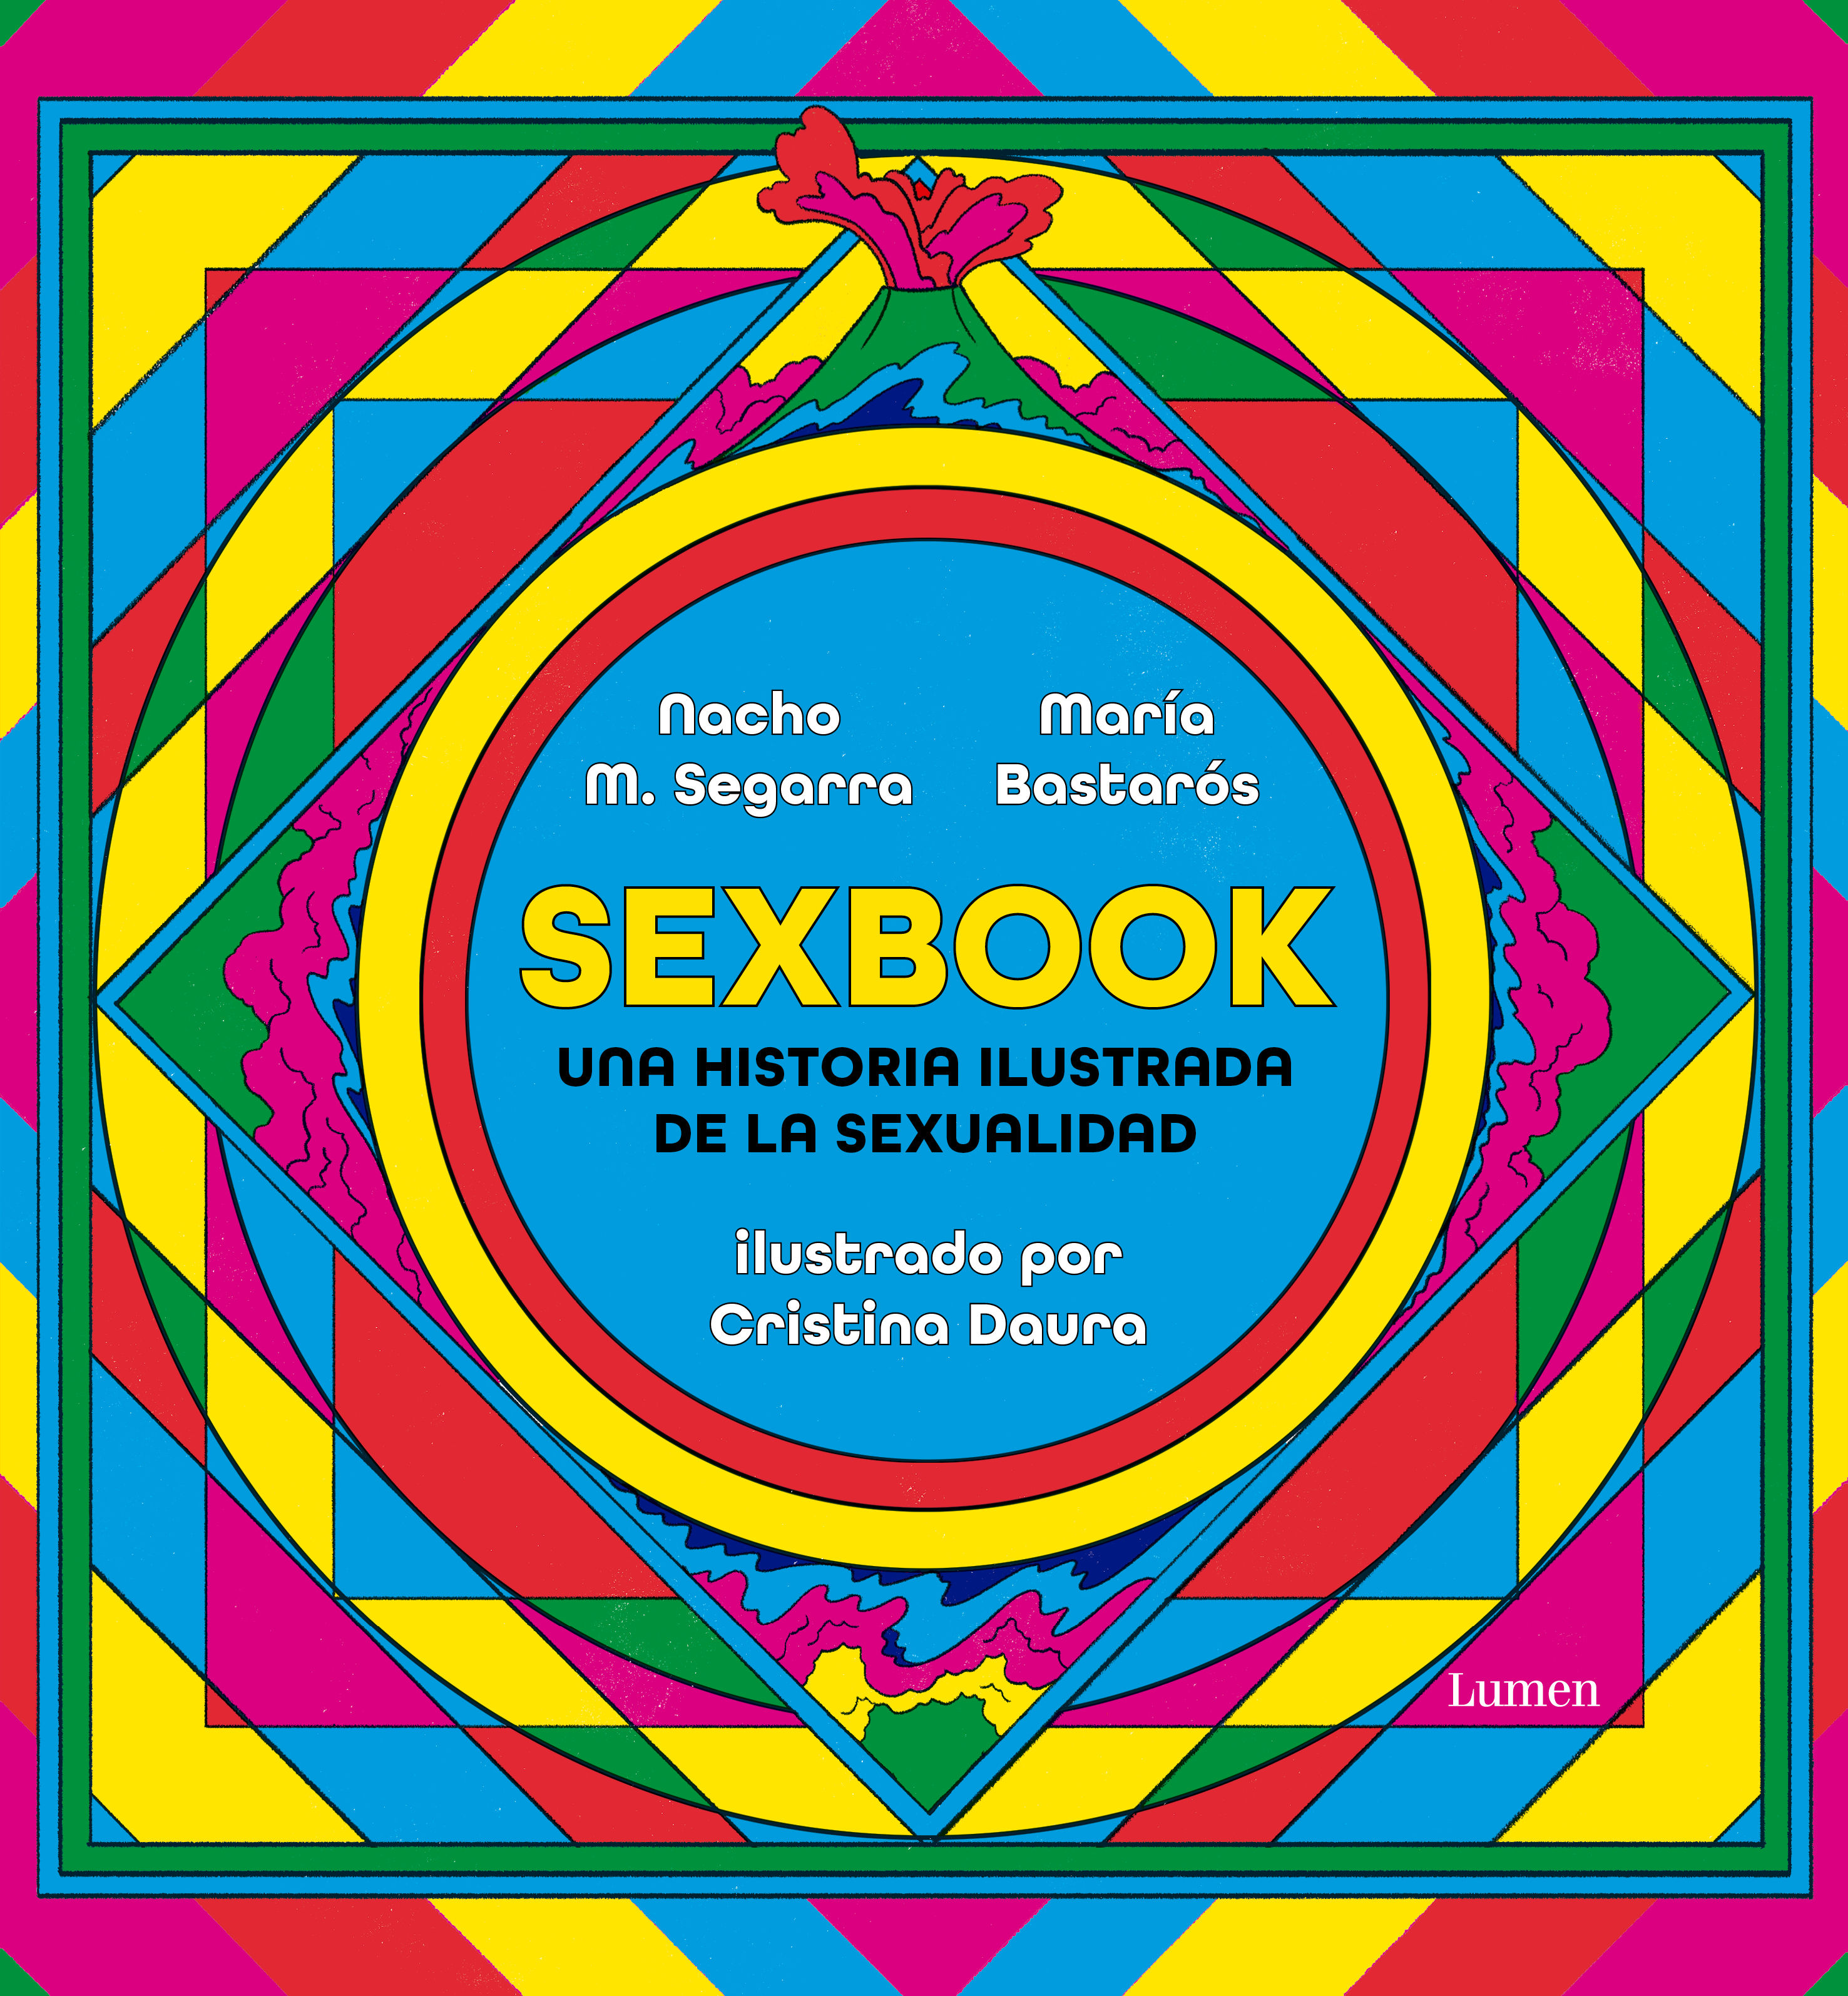 SEXBOOK. UNA HISTORIA ILUSTRADA DE LA SEXUALIDAD